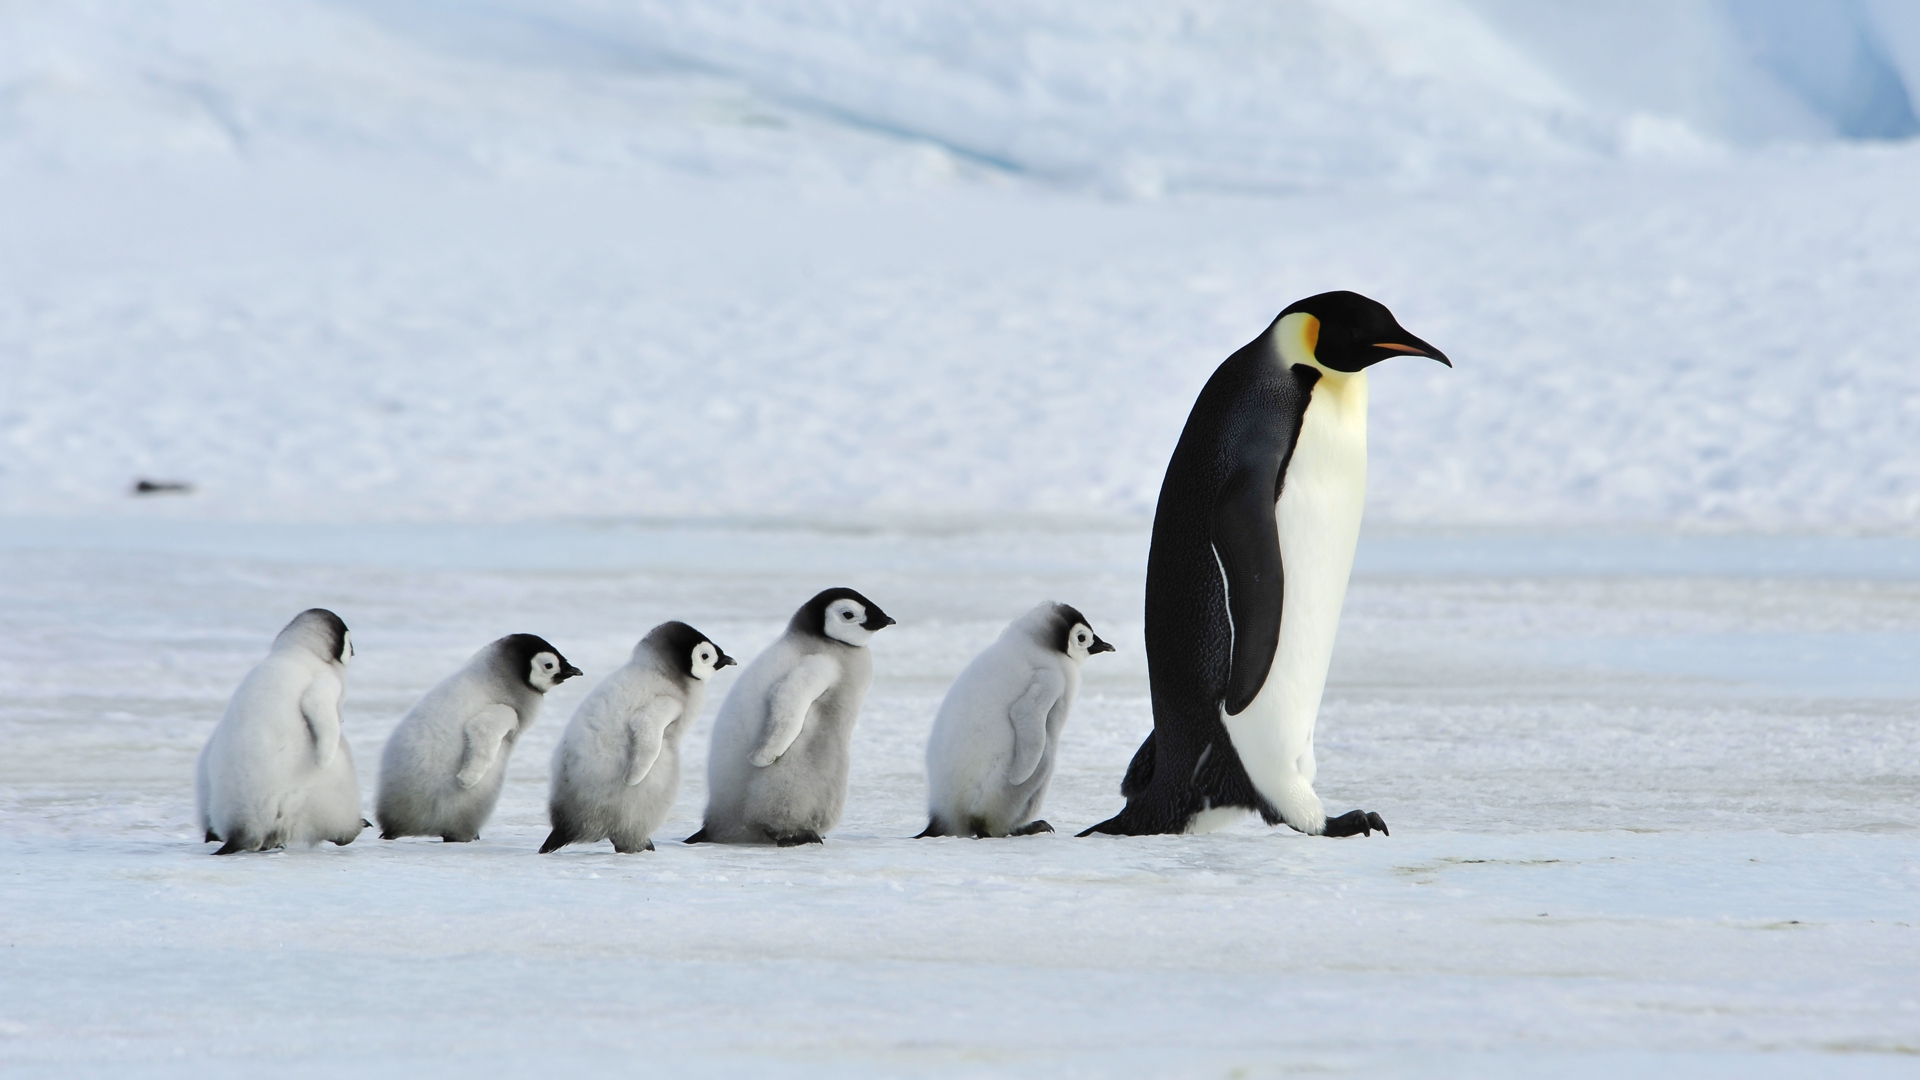 氣候危機令海冰融化南極皇帝企鵝「冇掟企」或成易危物種- Greenpeace 綠色和平| 香港